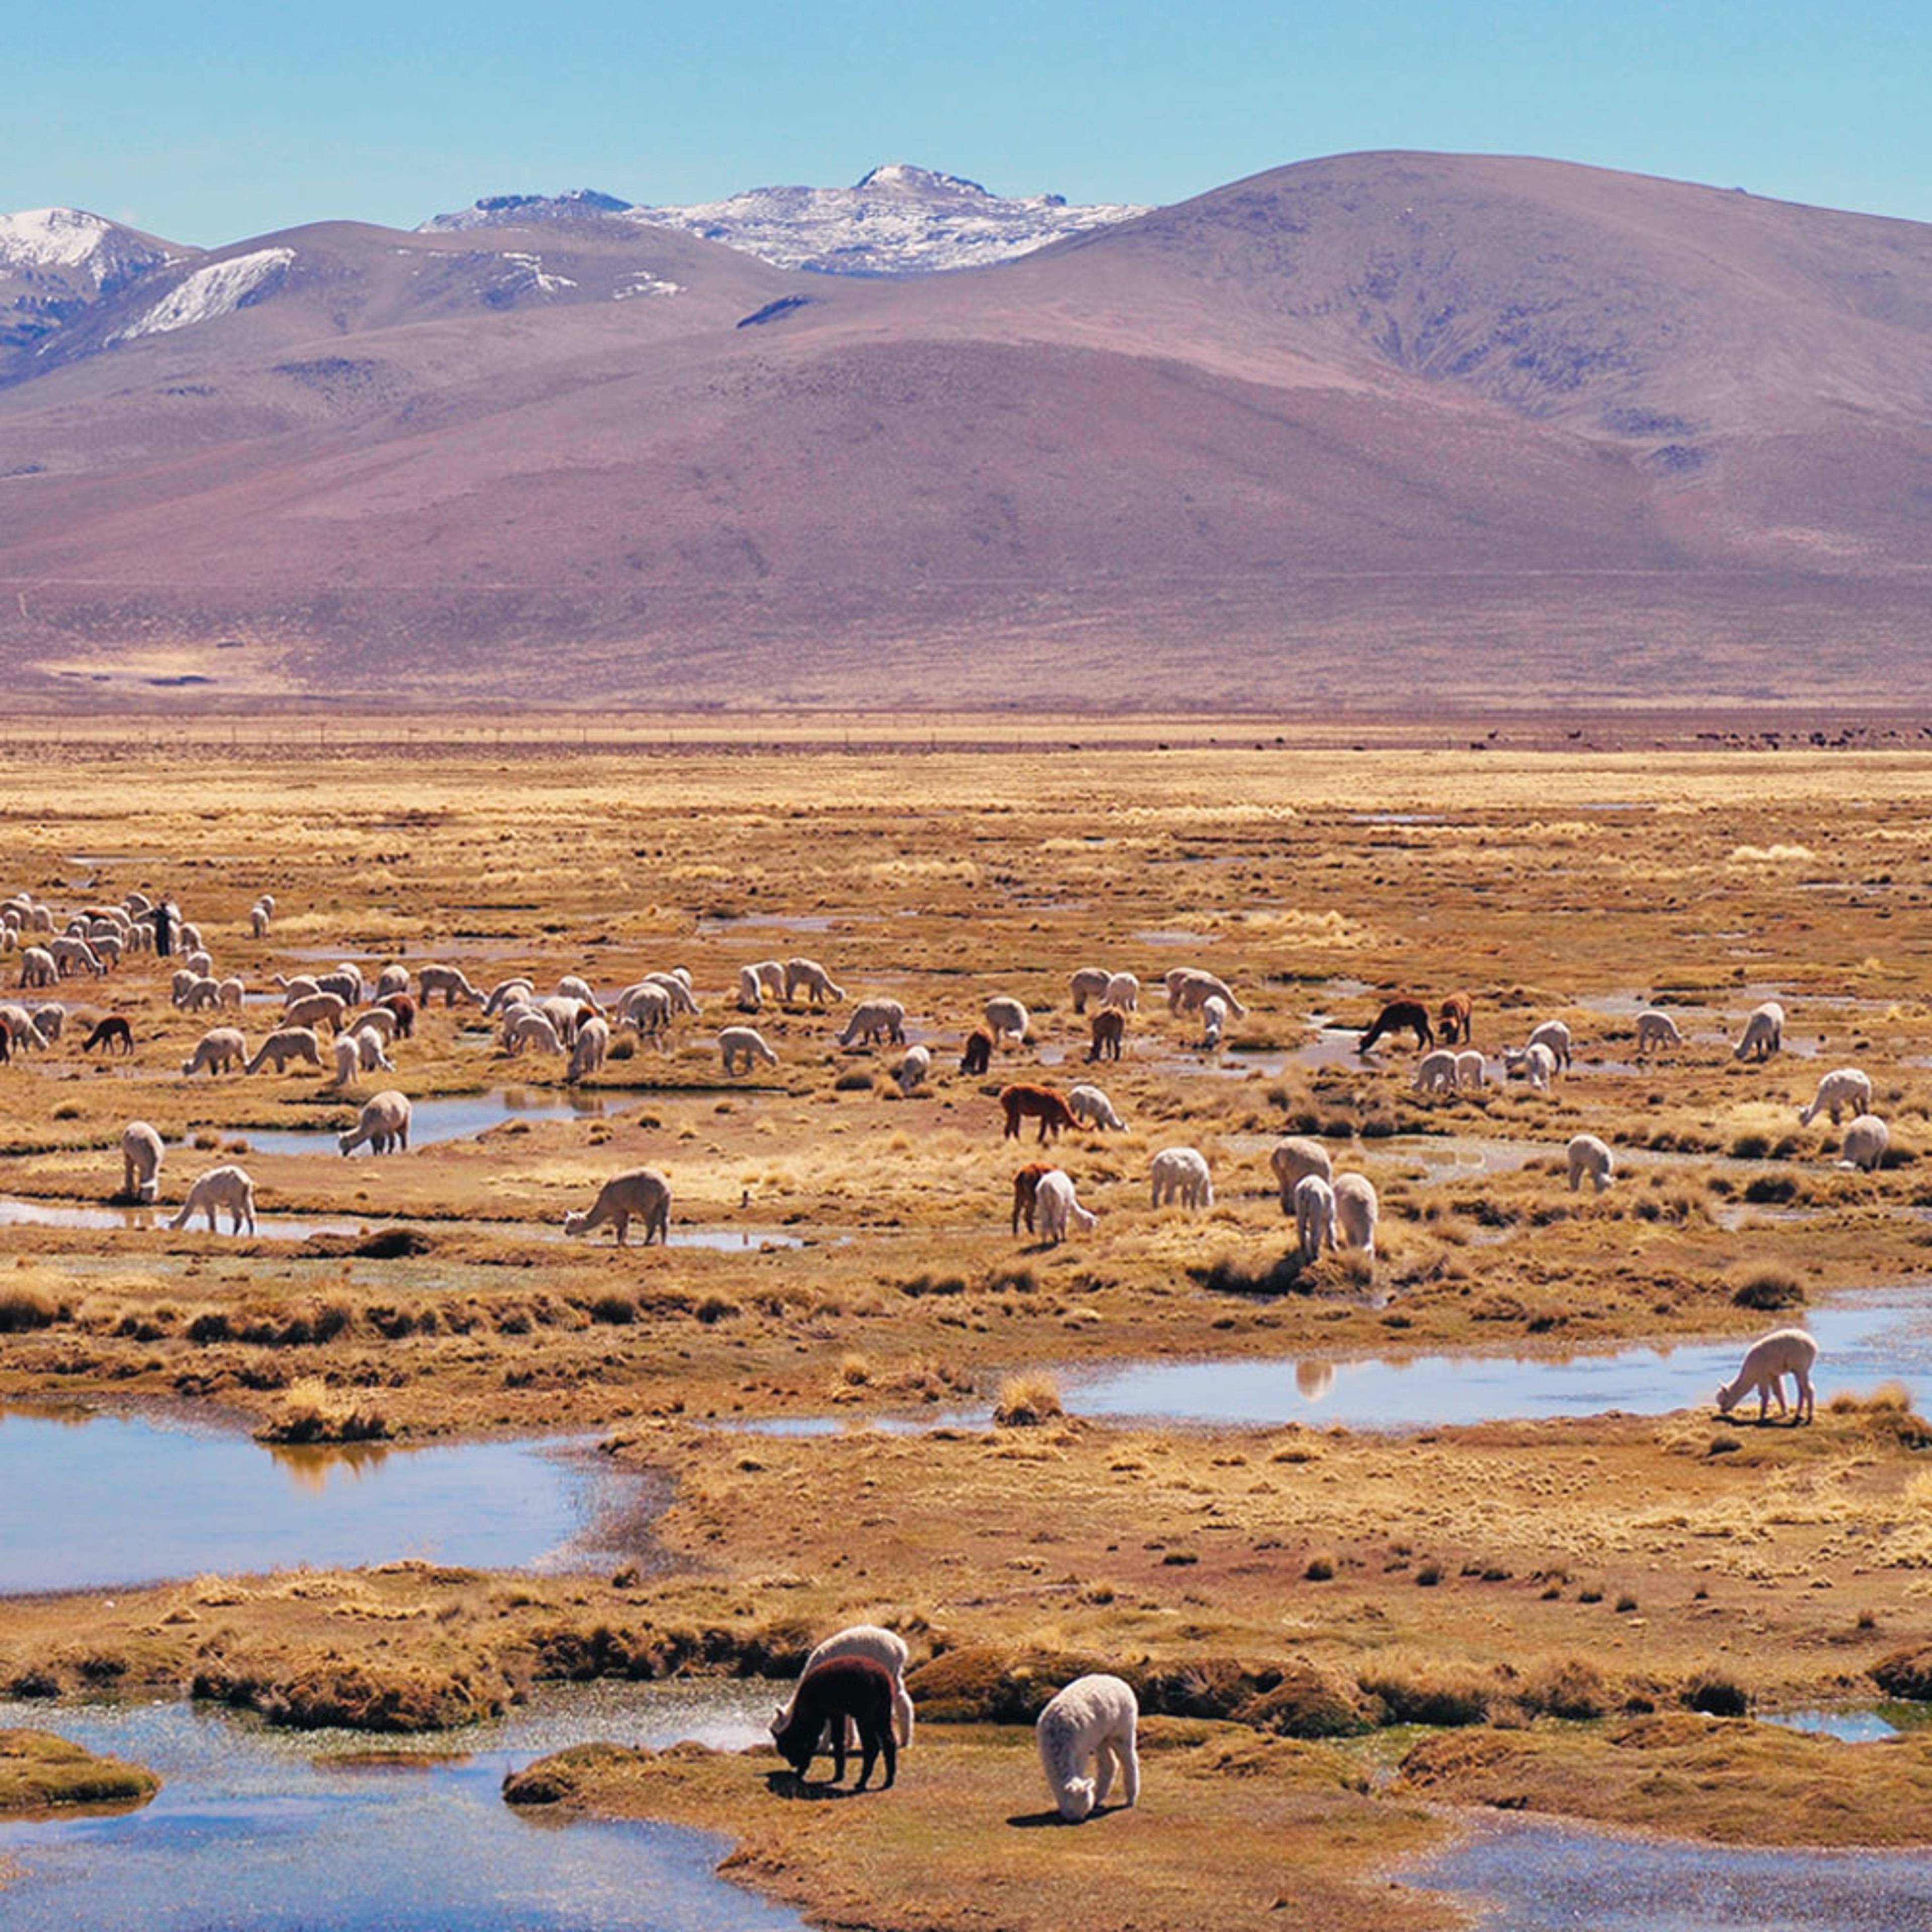 Individuelle Natur Reisen Peru - Reise jetzt individuell gestalten